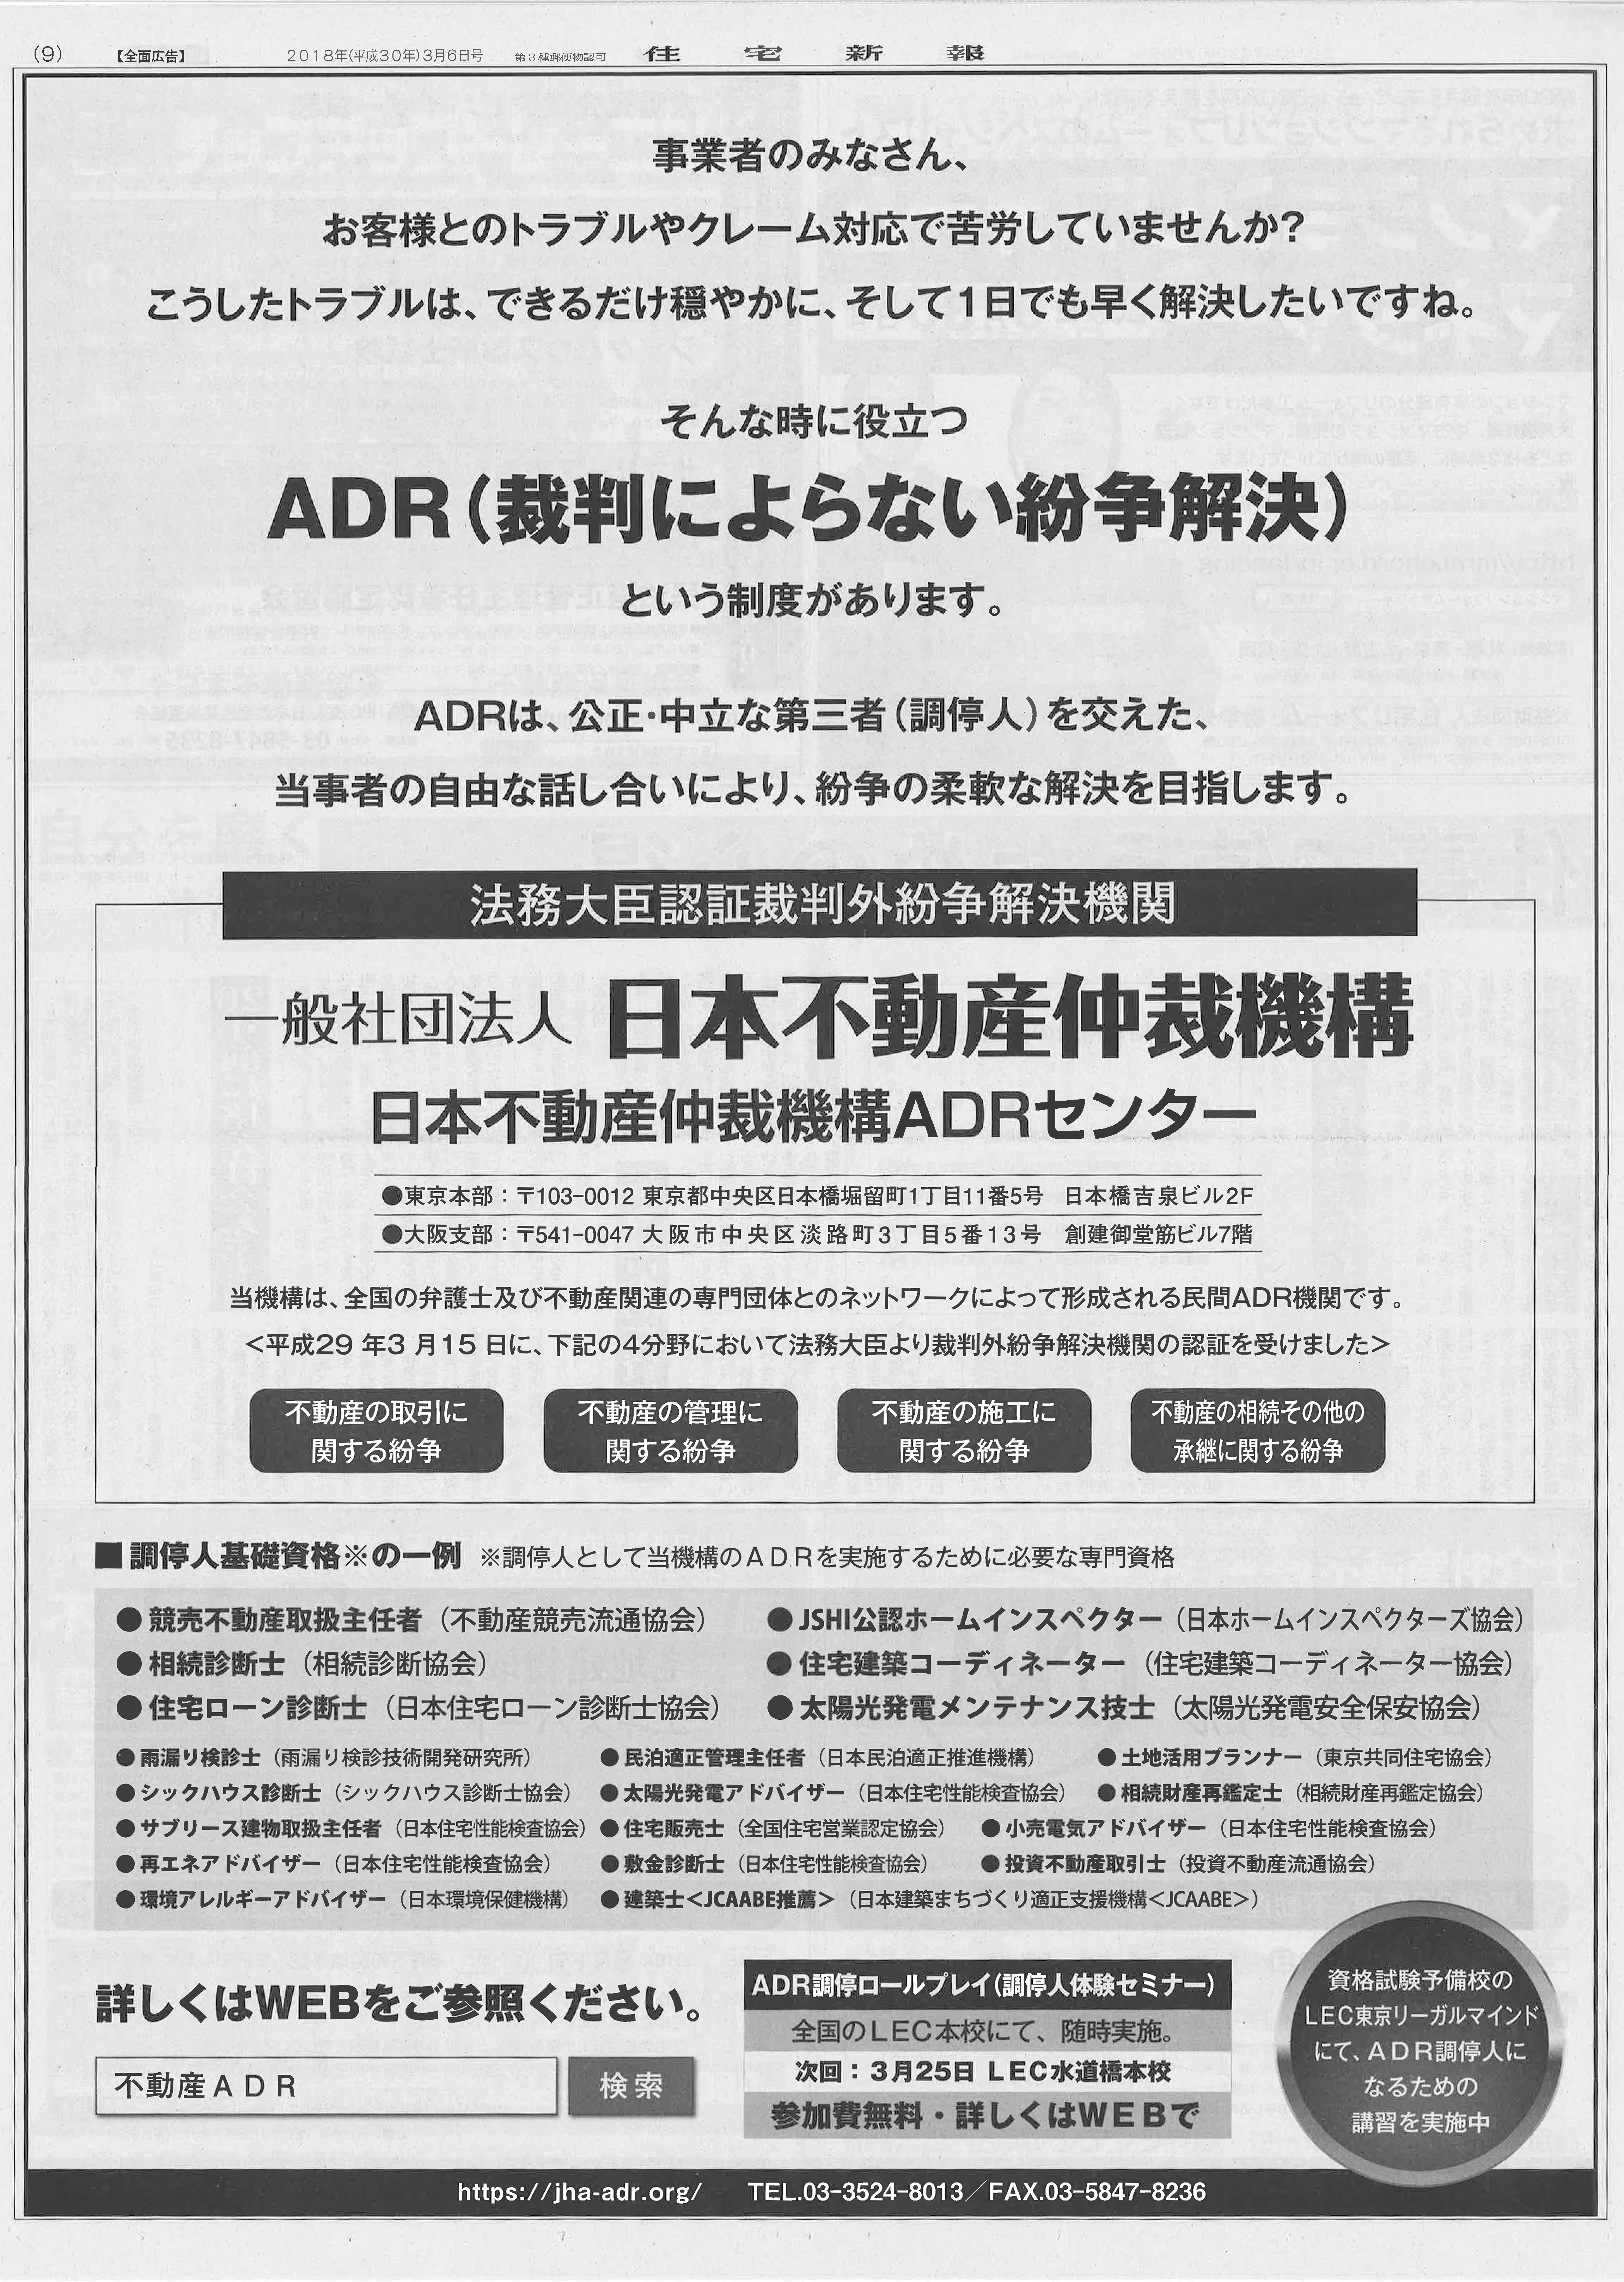 ADR_住宅ローン診断士